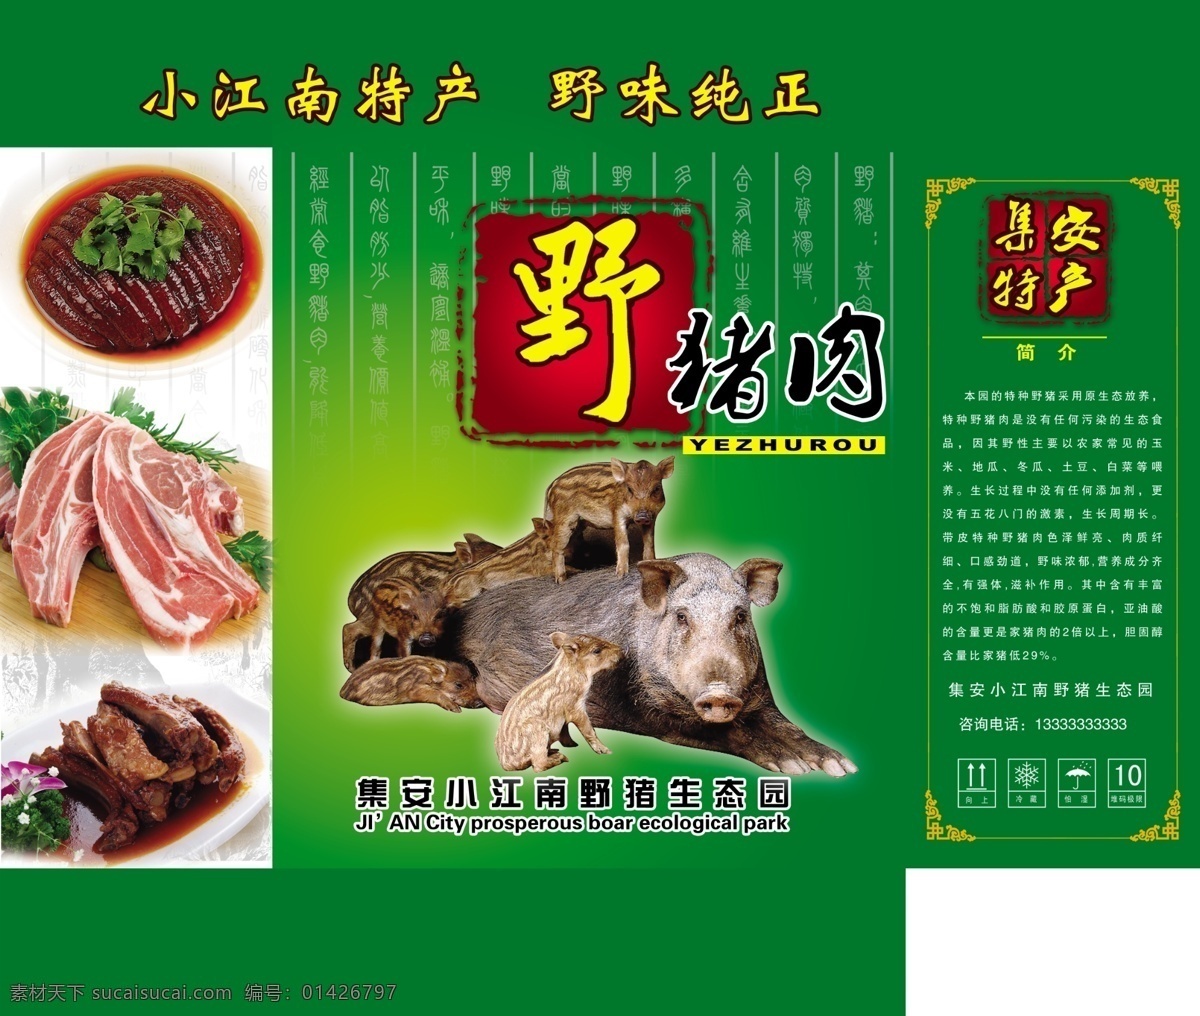 野猪肉包装箱 野猪肉 包装箱 肉图片 简介 特产品 猪肉包装 psd图库 包装设计 广告设计模板 源文件